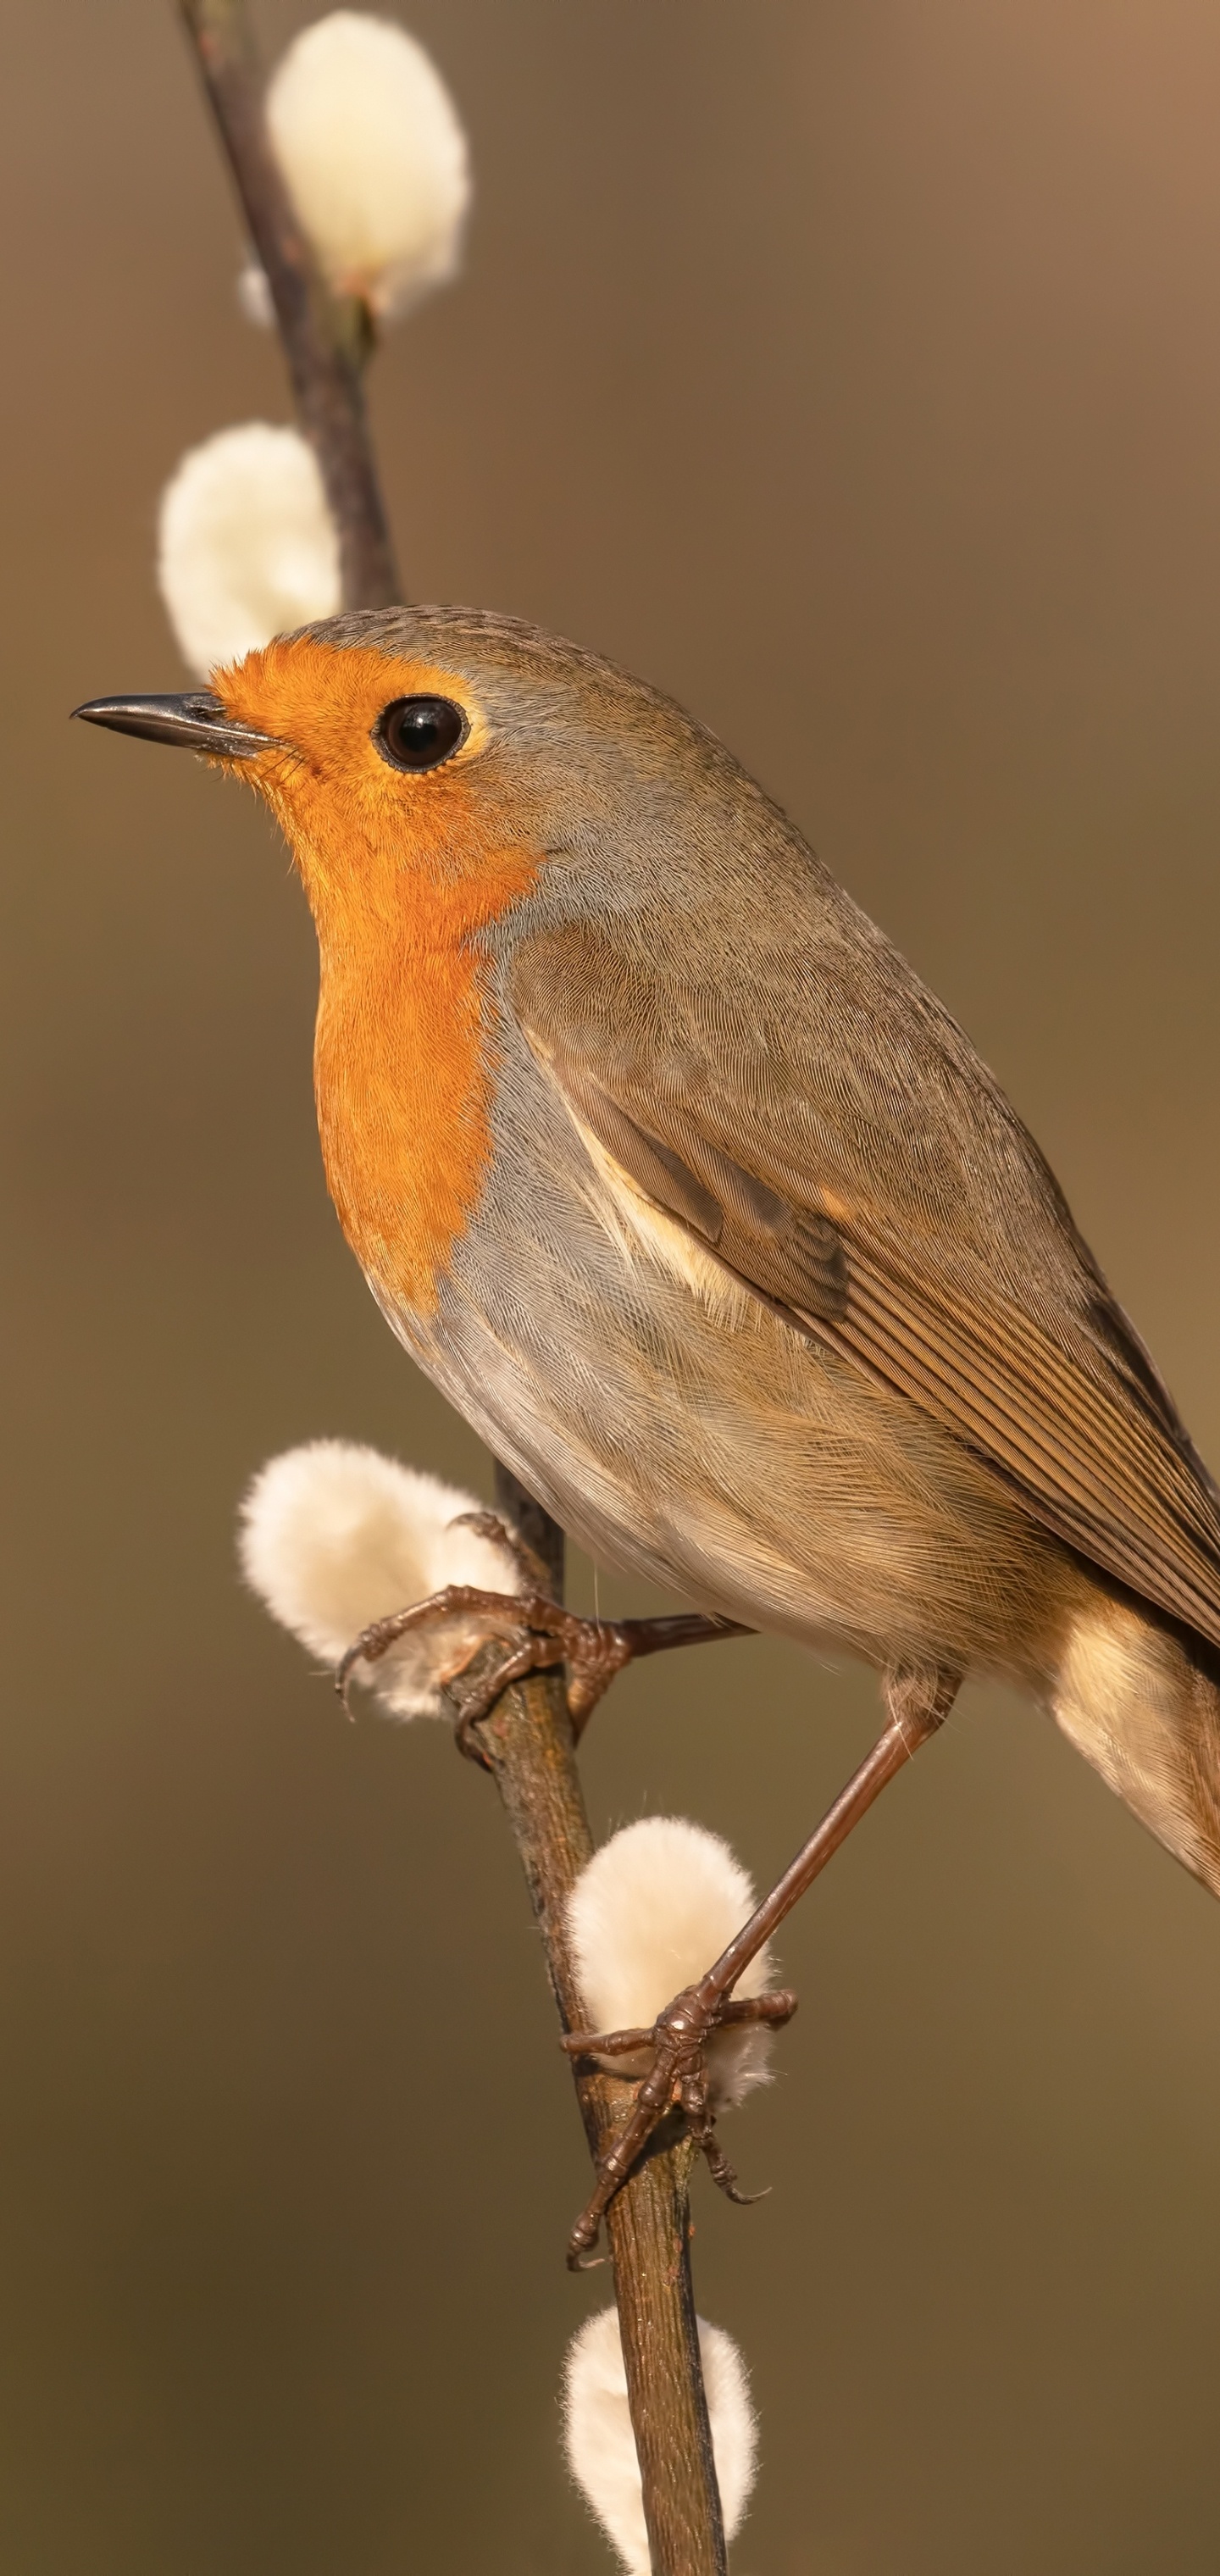 Robin bird, Songbird species, Distinctive orange breast, Chirping melodies, 1440x3040 HD Phone